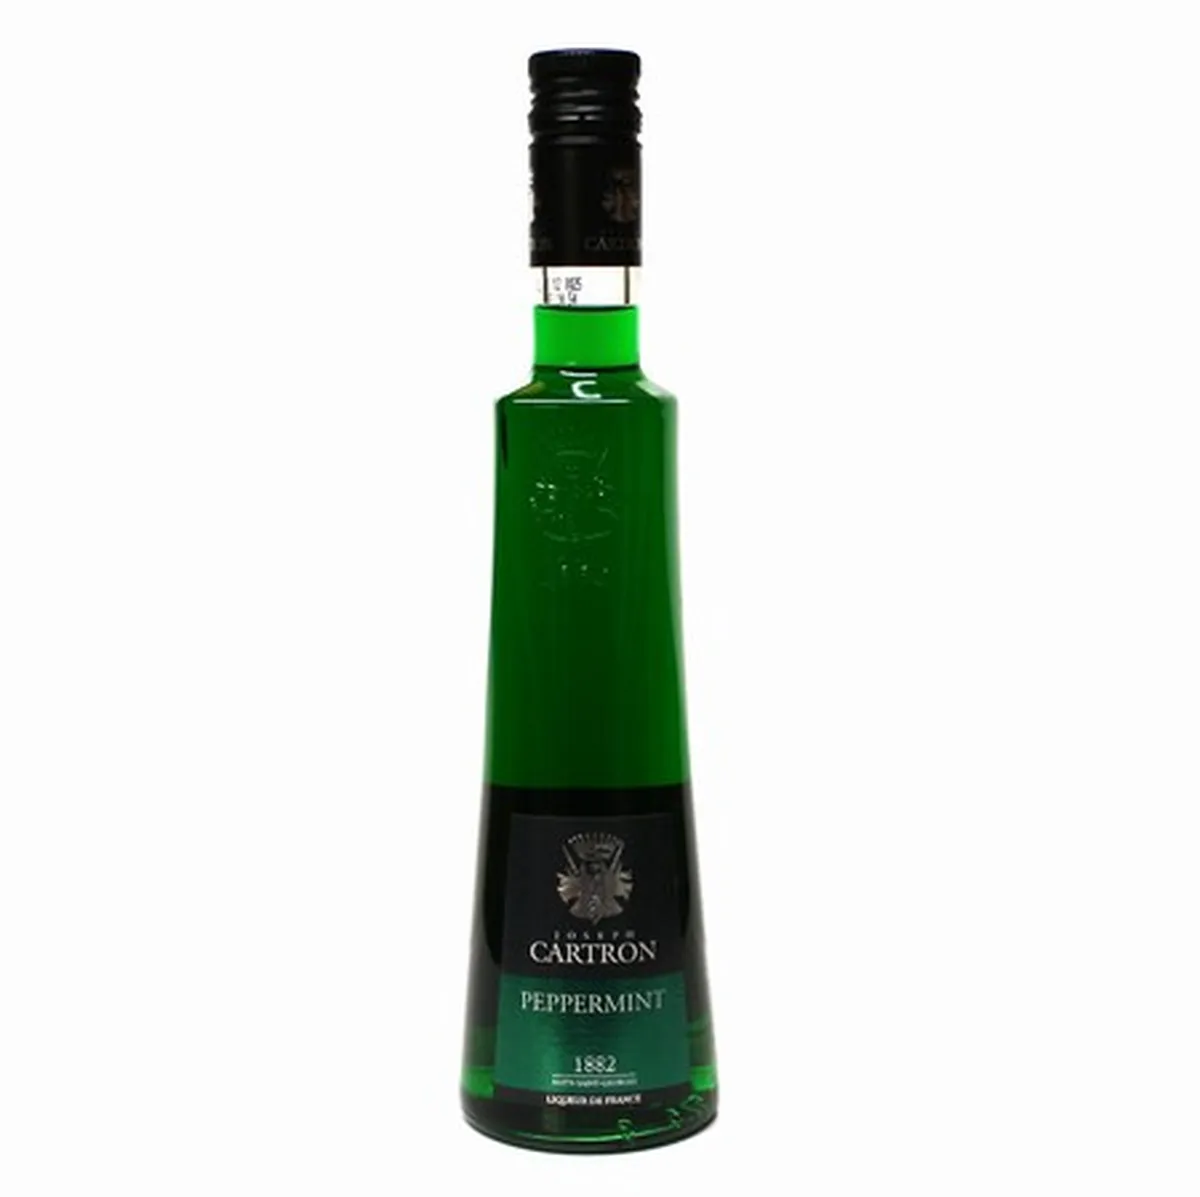 green peppermint liquor joseph cartron 21 ° 50 cl